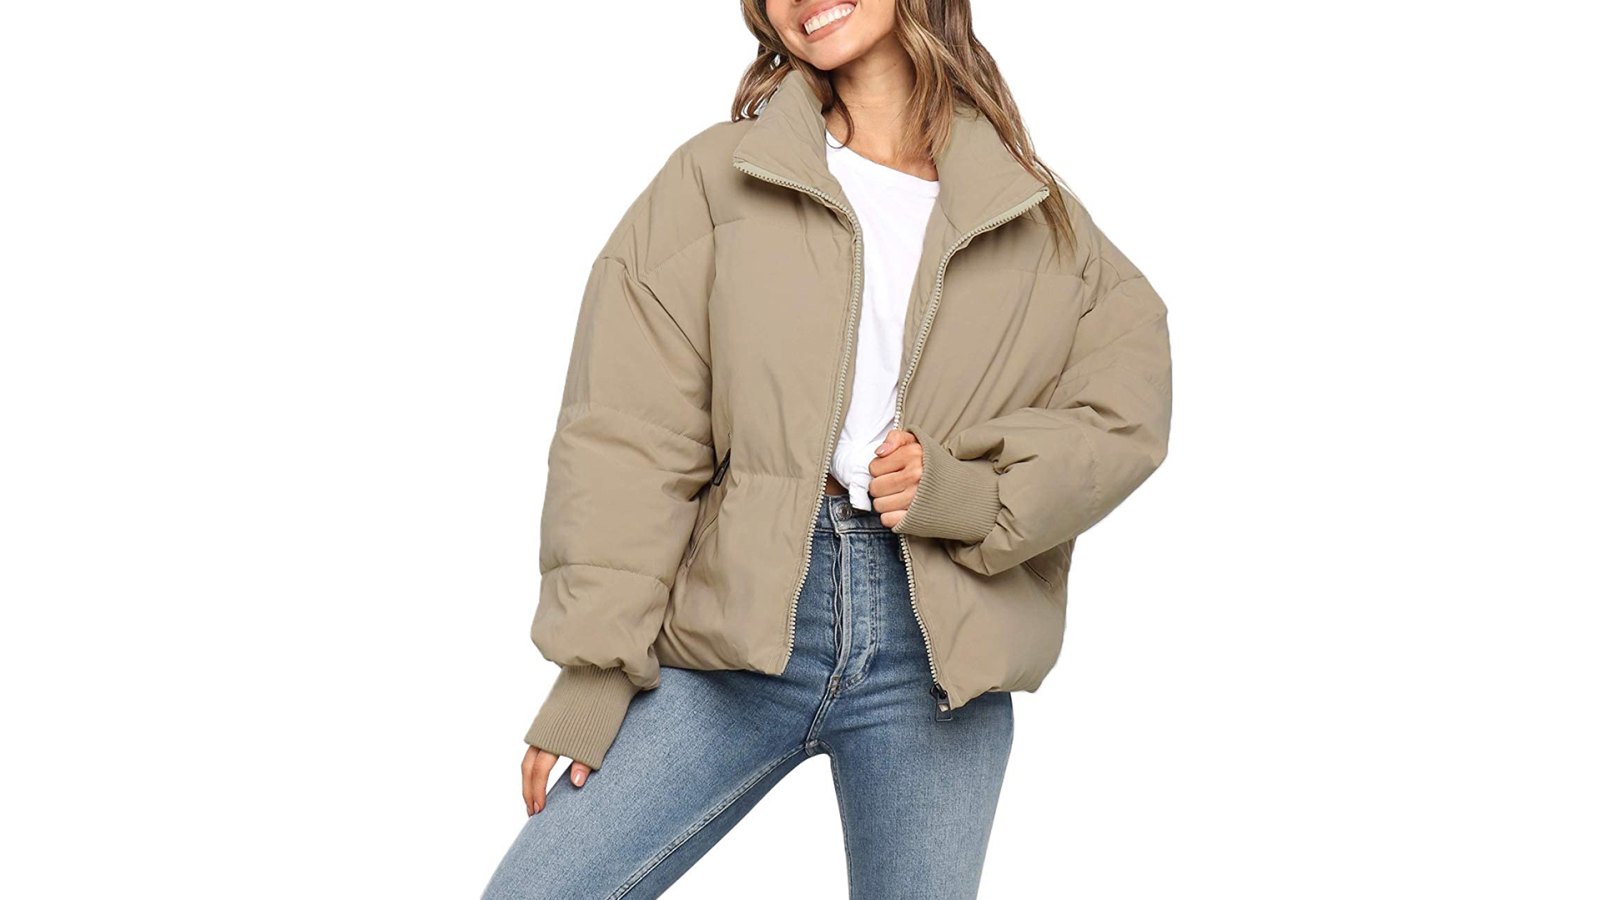 hebben zich vergist gewicht straal This Comfy Puffer Jacket From Amazon Is a Luxe Lookalike